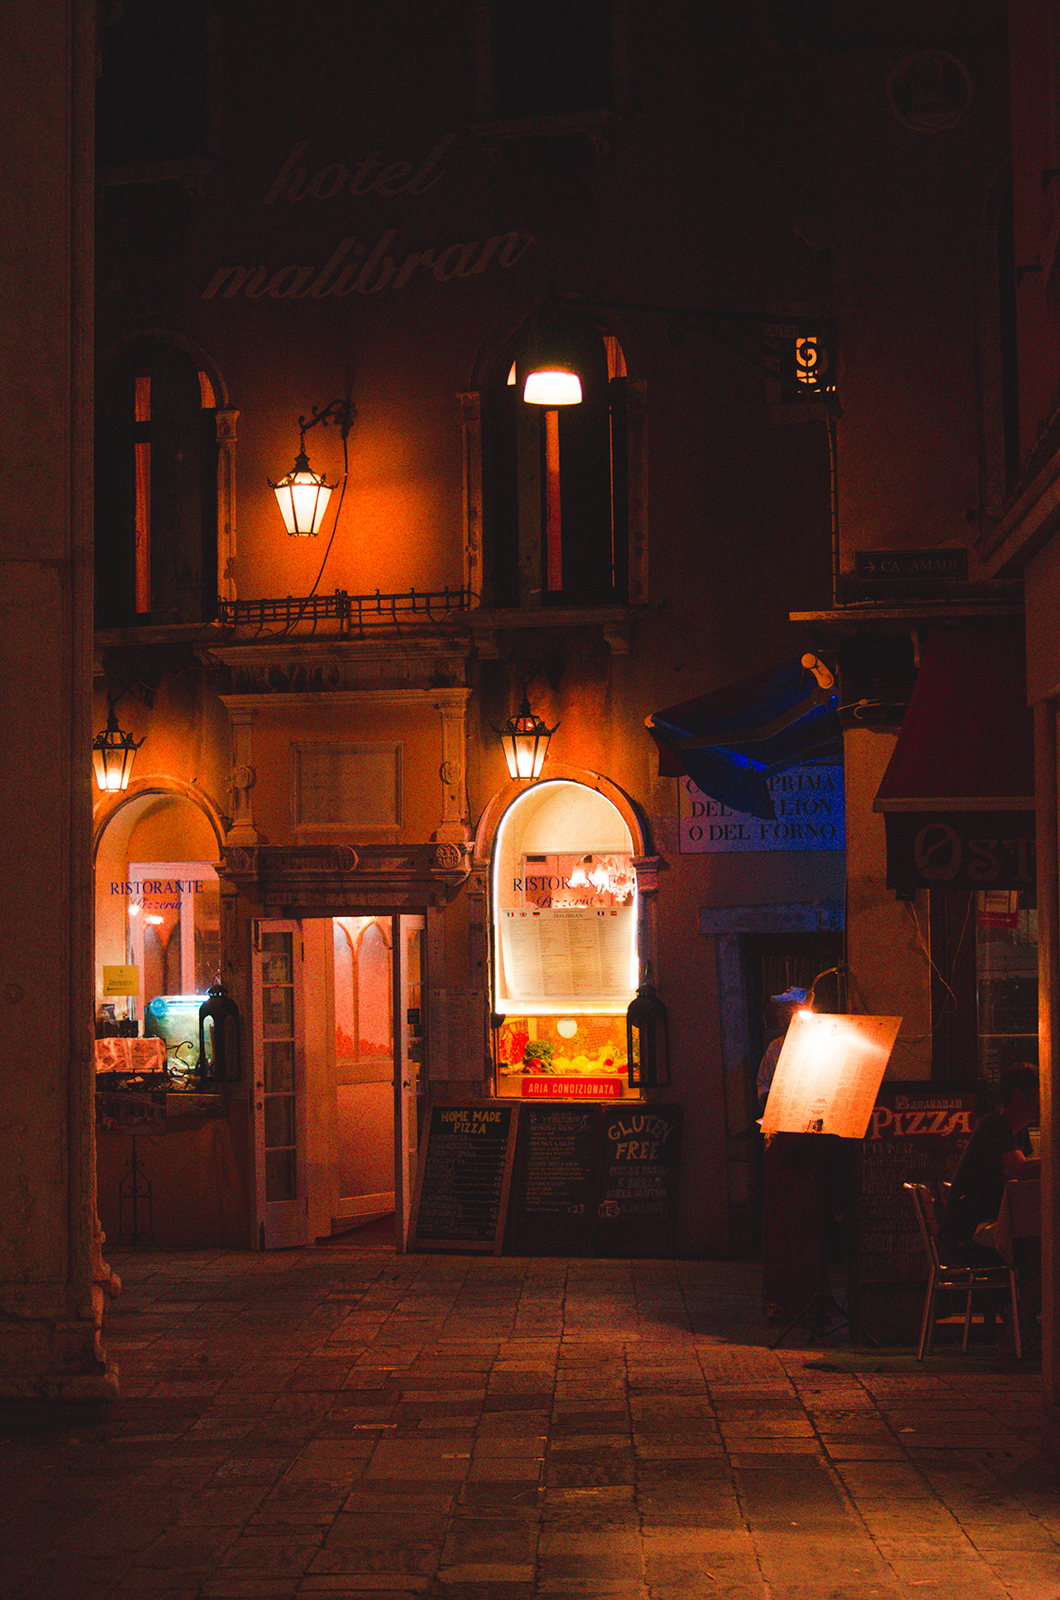 Дочь Атлантиды: обворожительная Венеция на снимках Олега Смирнова Венеция,Италия,тревел-фото